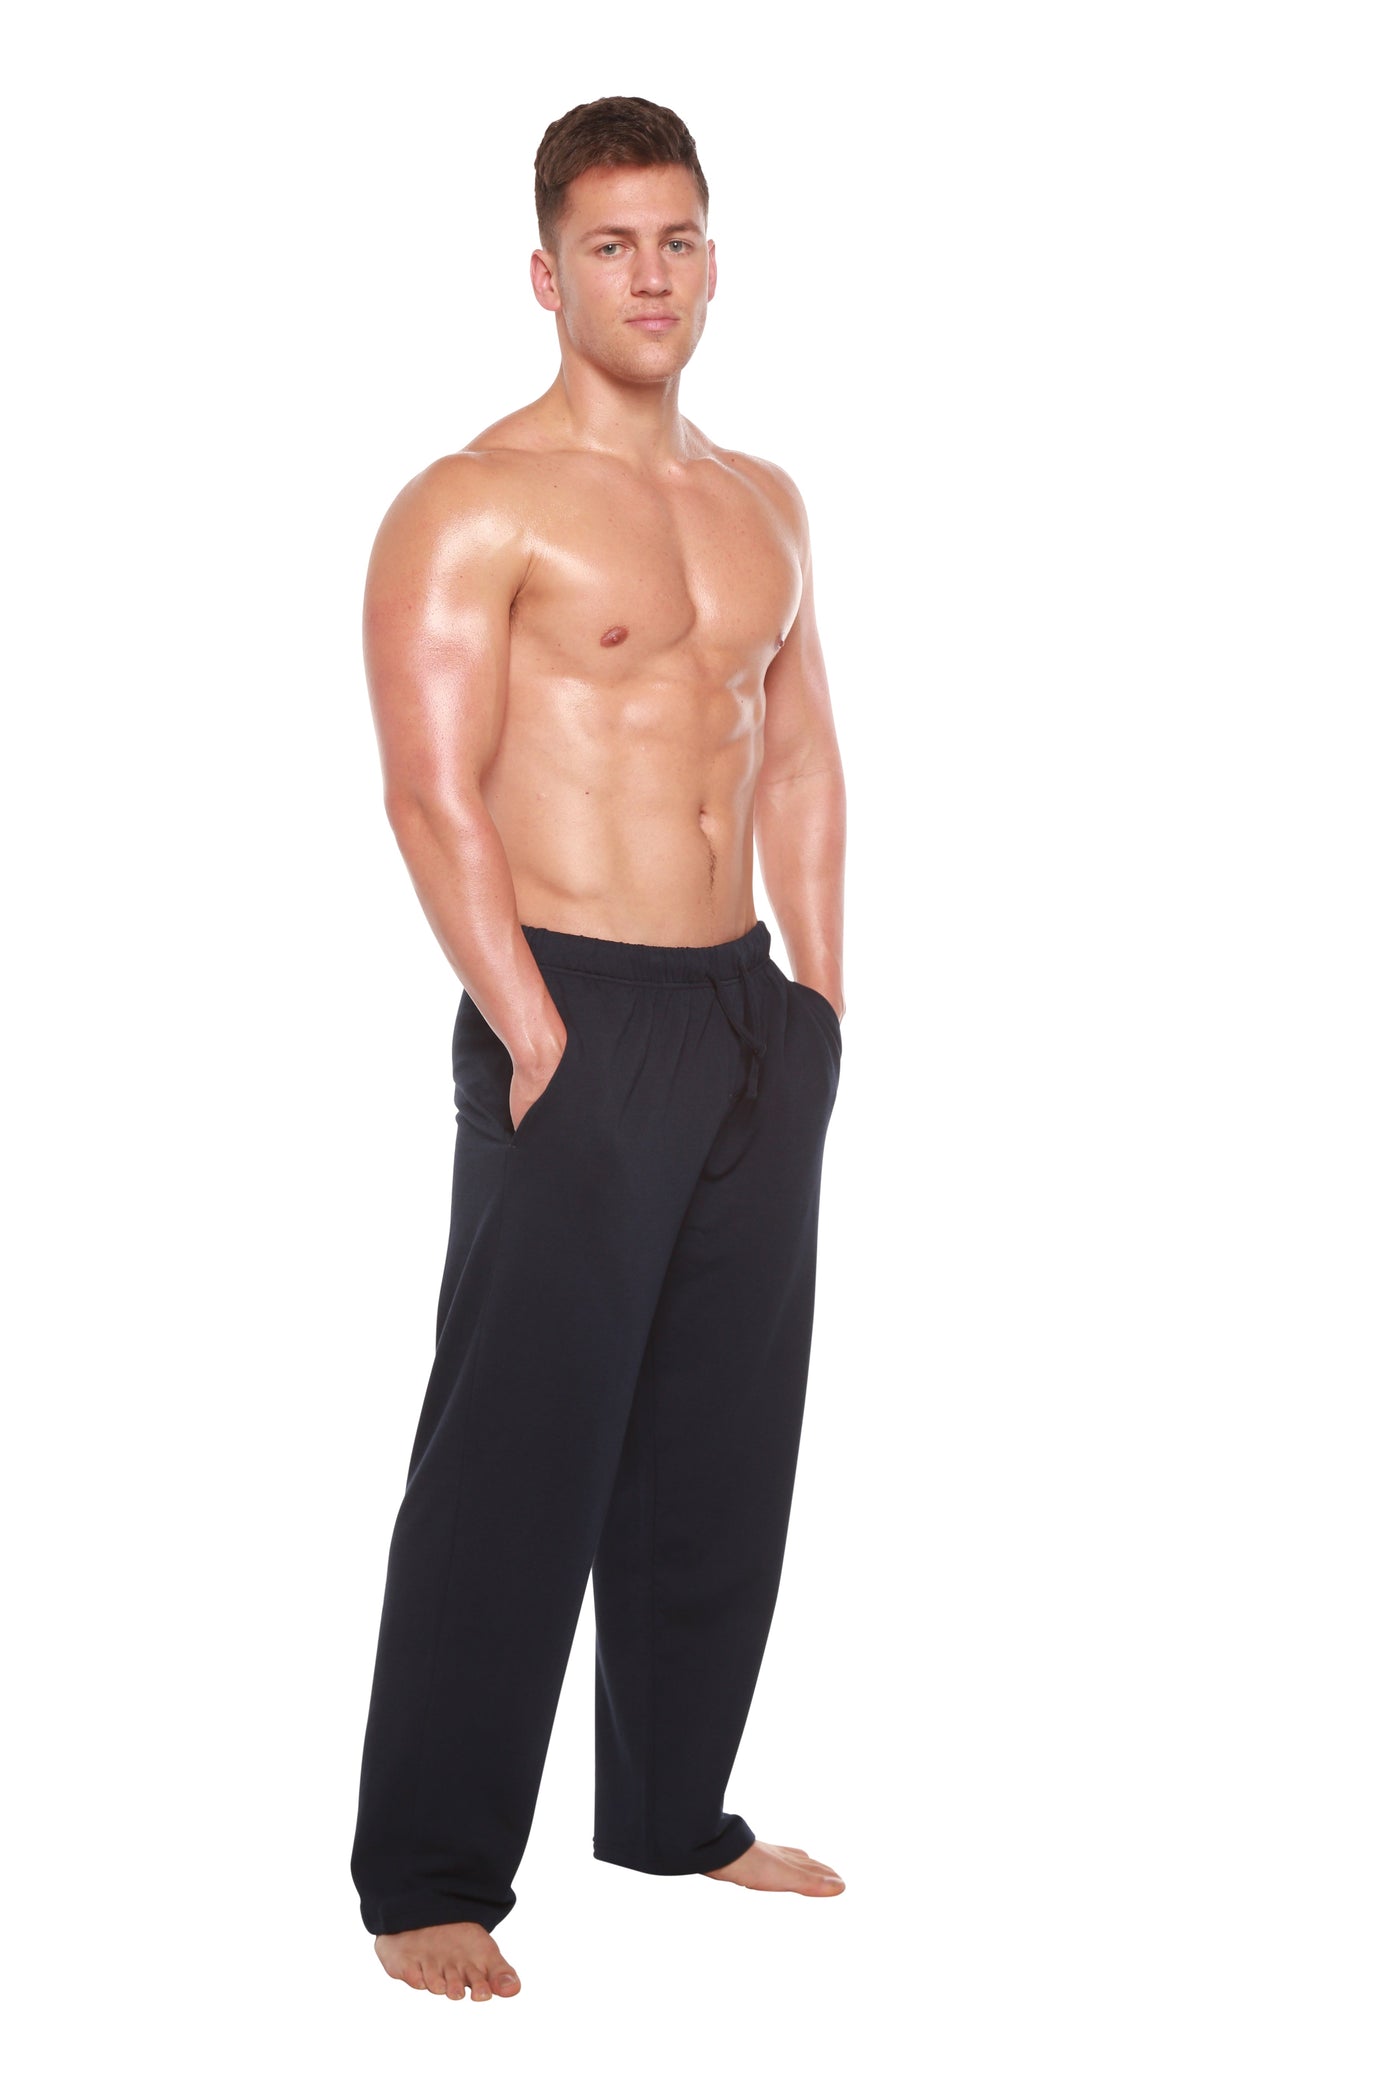 Men's Bamboo Viscose Fleece Lounge Pants - Spun Bamboo